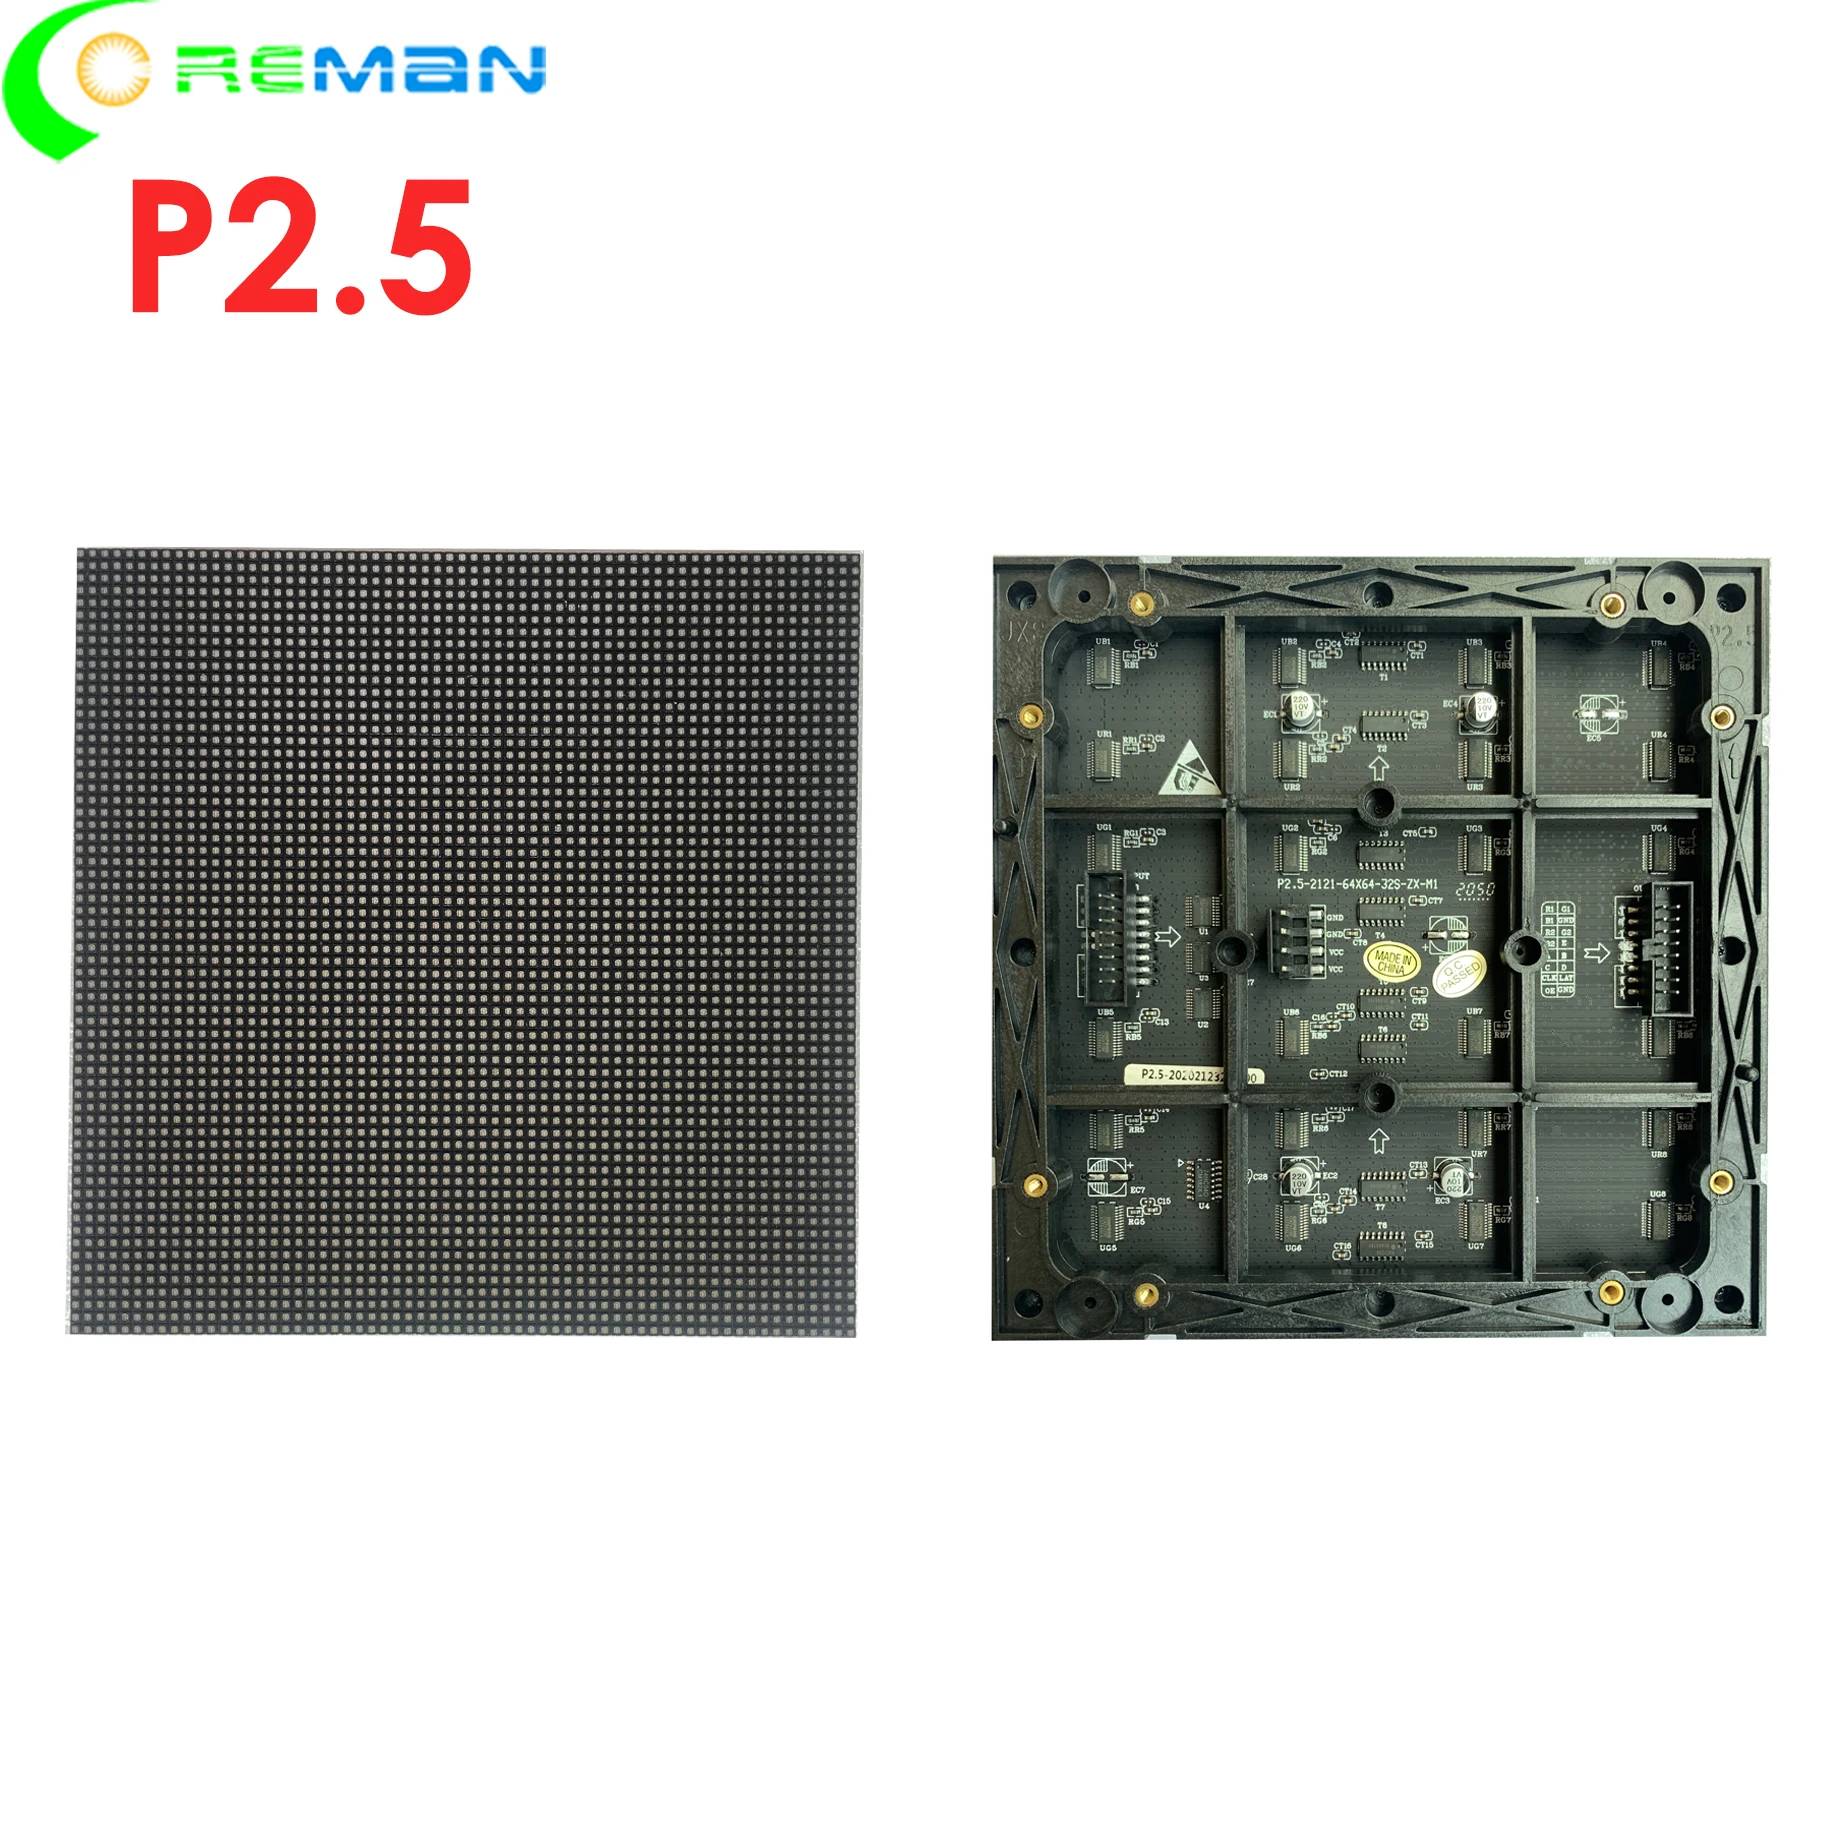 США Европа Бесплатная доставка светодиодный модуль p2.5 крытый 64x64 точечный светодиодный модуль dmx шаг пикселя 2,5 мм HD светодиодная матрица